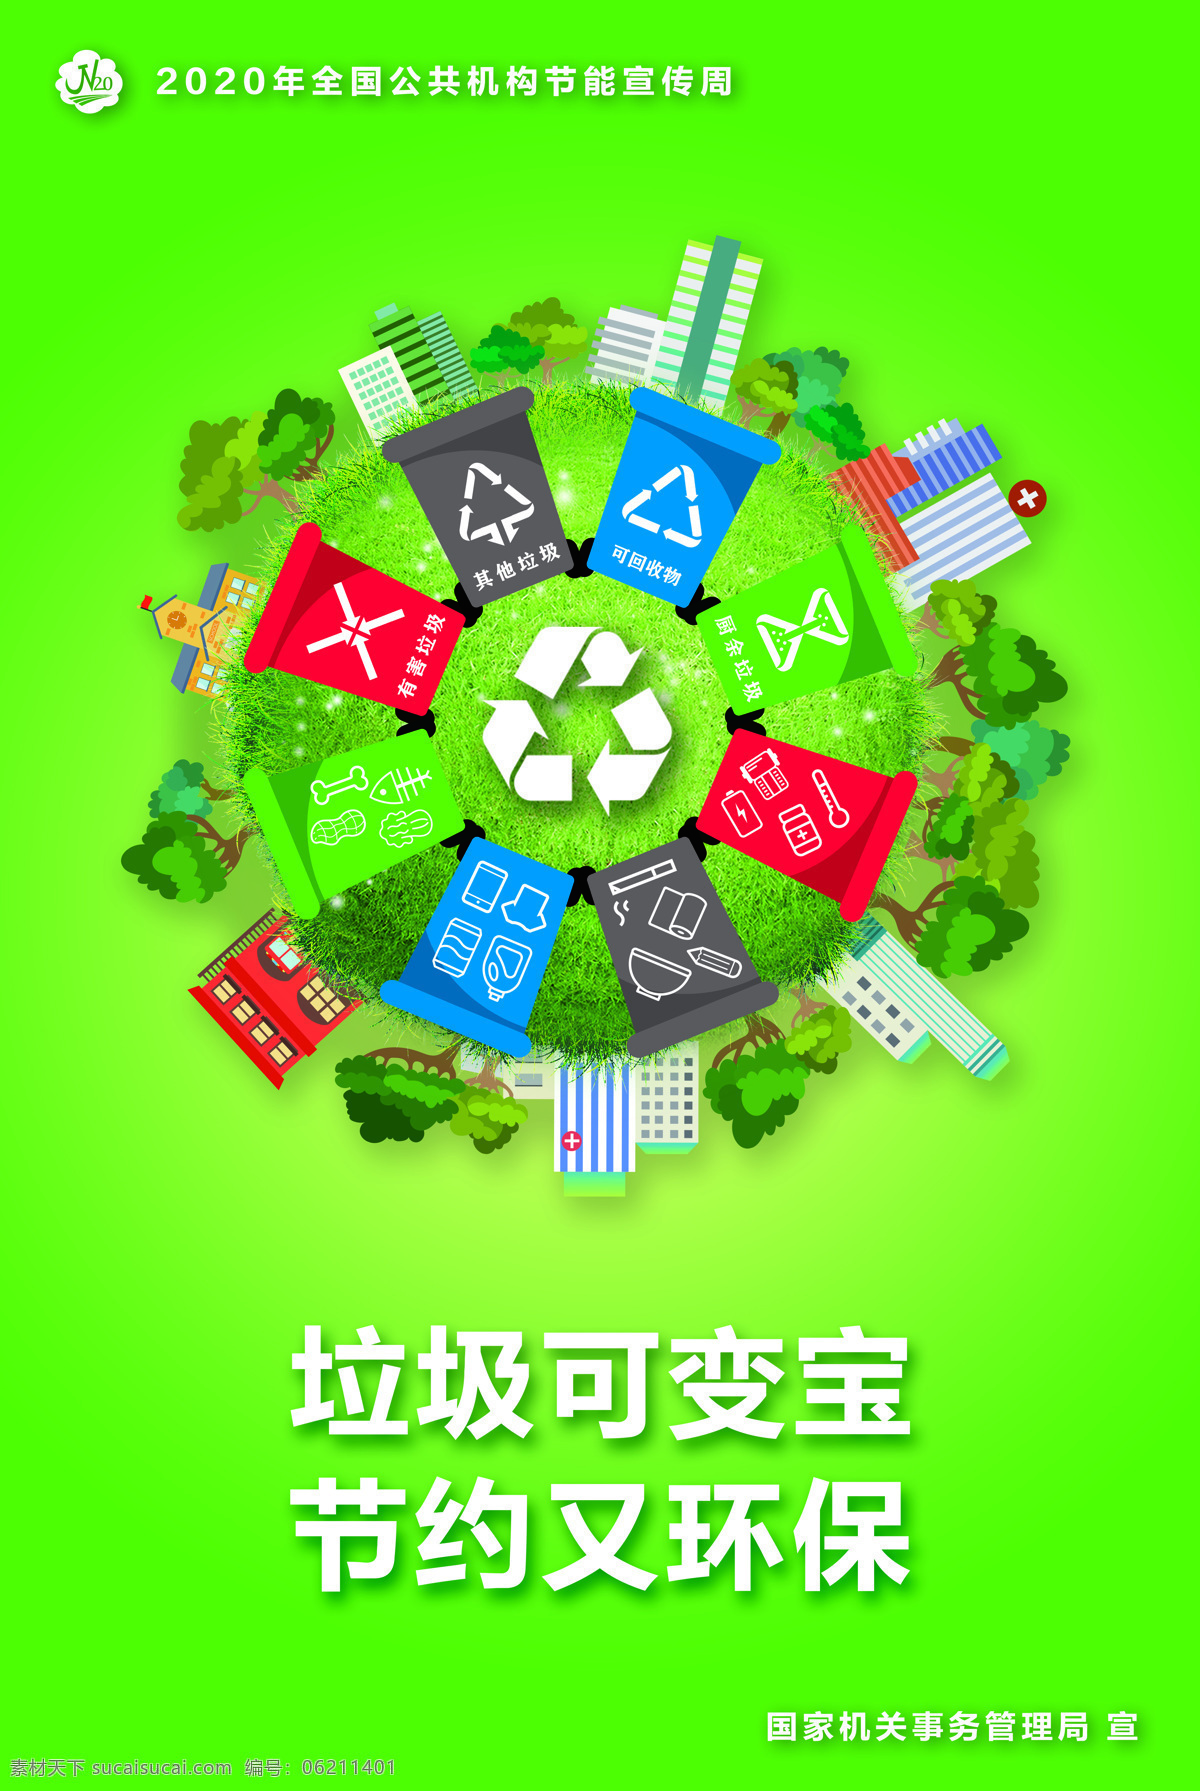 垃圾变宝 节约环保 绿色 垃圾 节约 环保 调查队